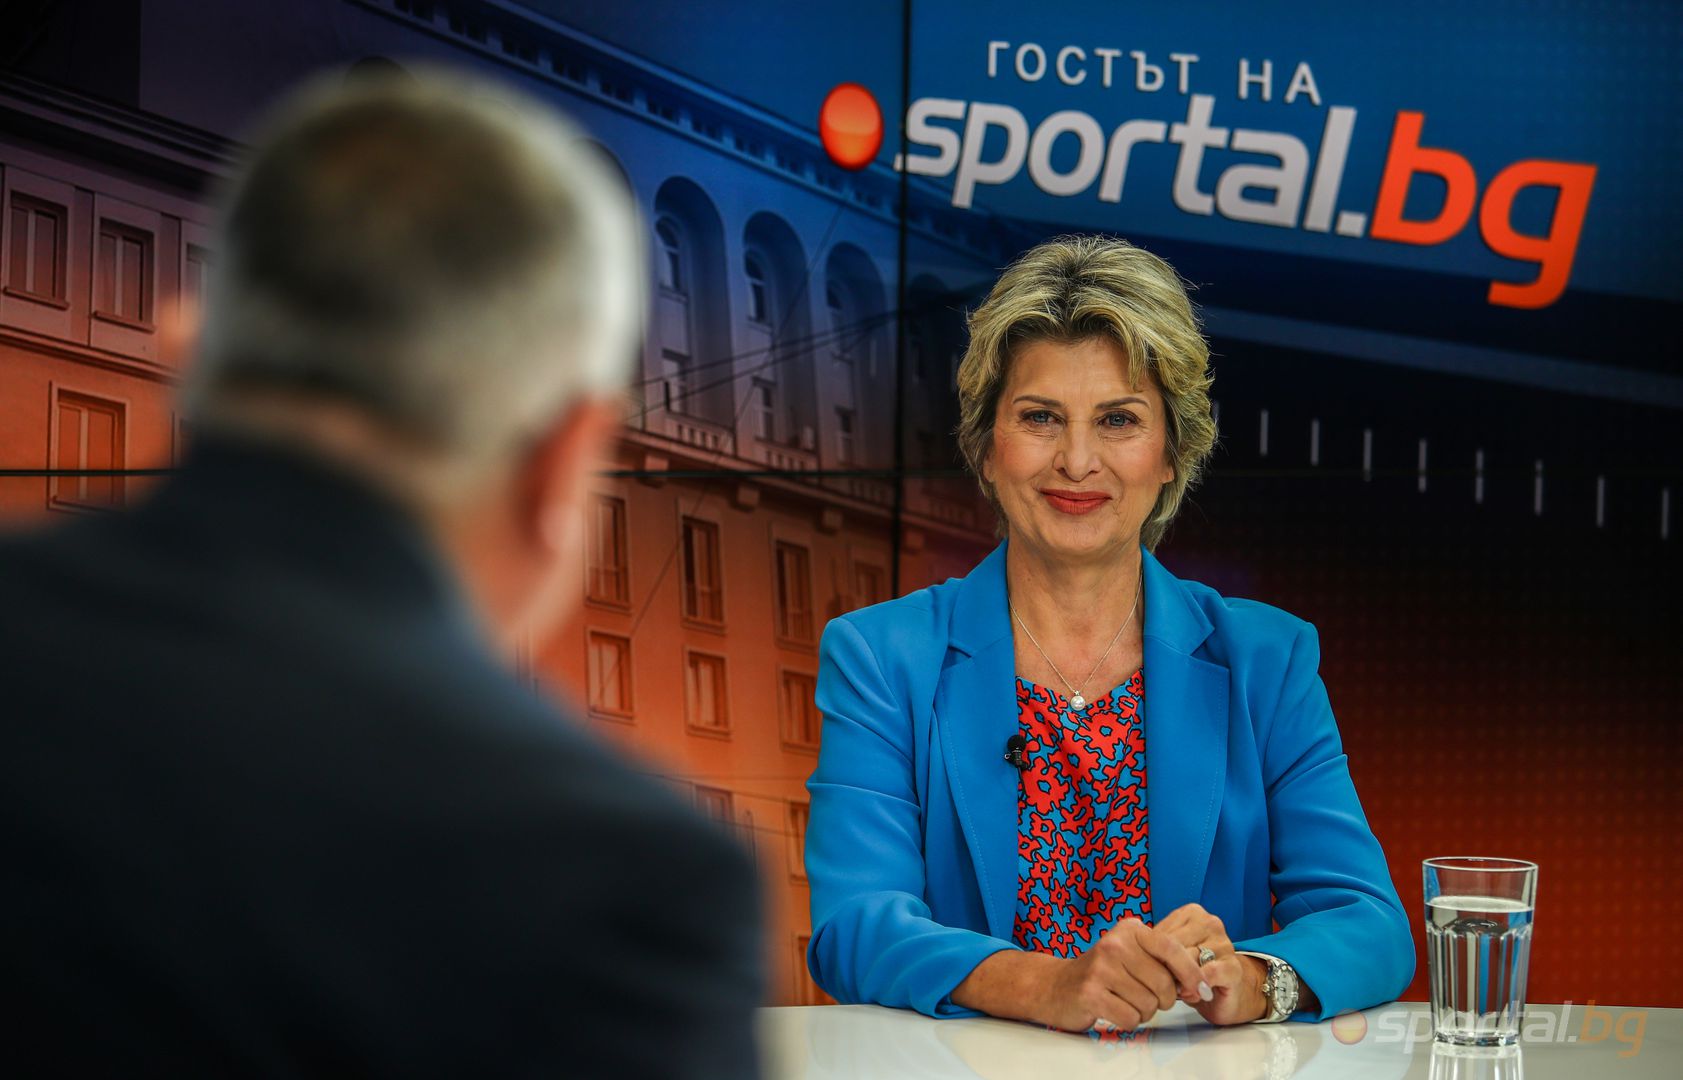 Министър Весела Лечева в "Гостът на Sportal.bg"